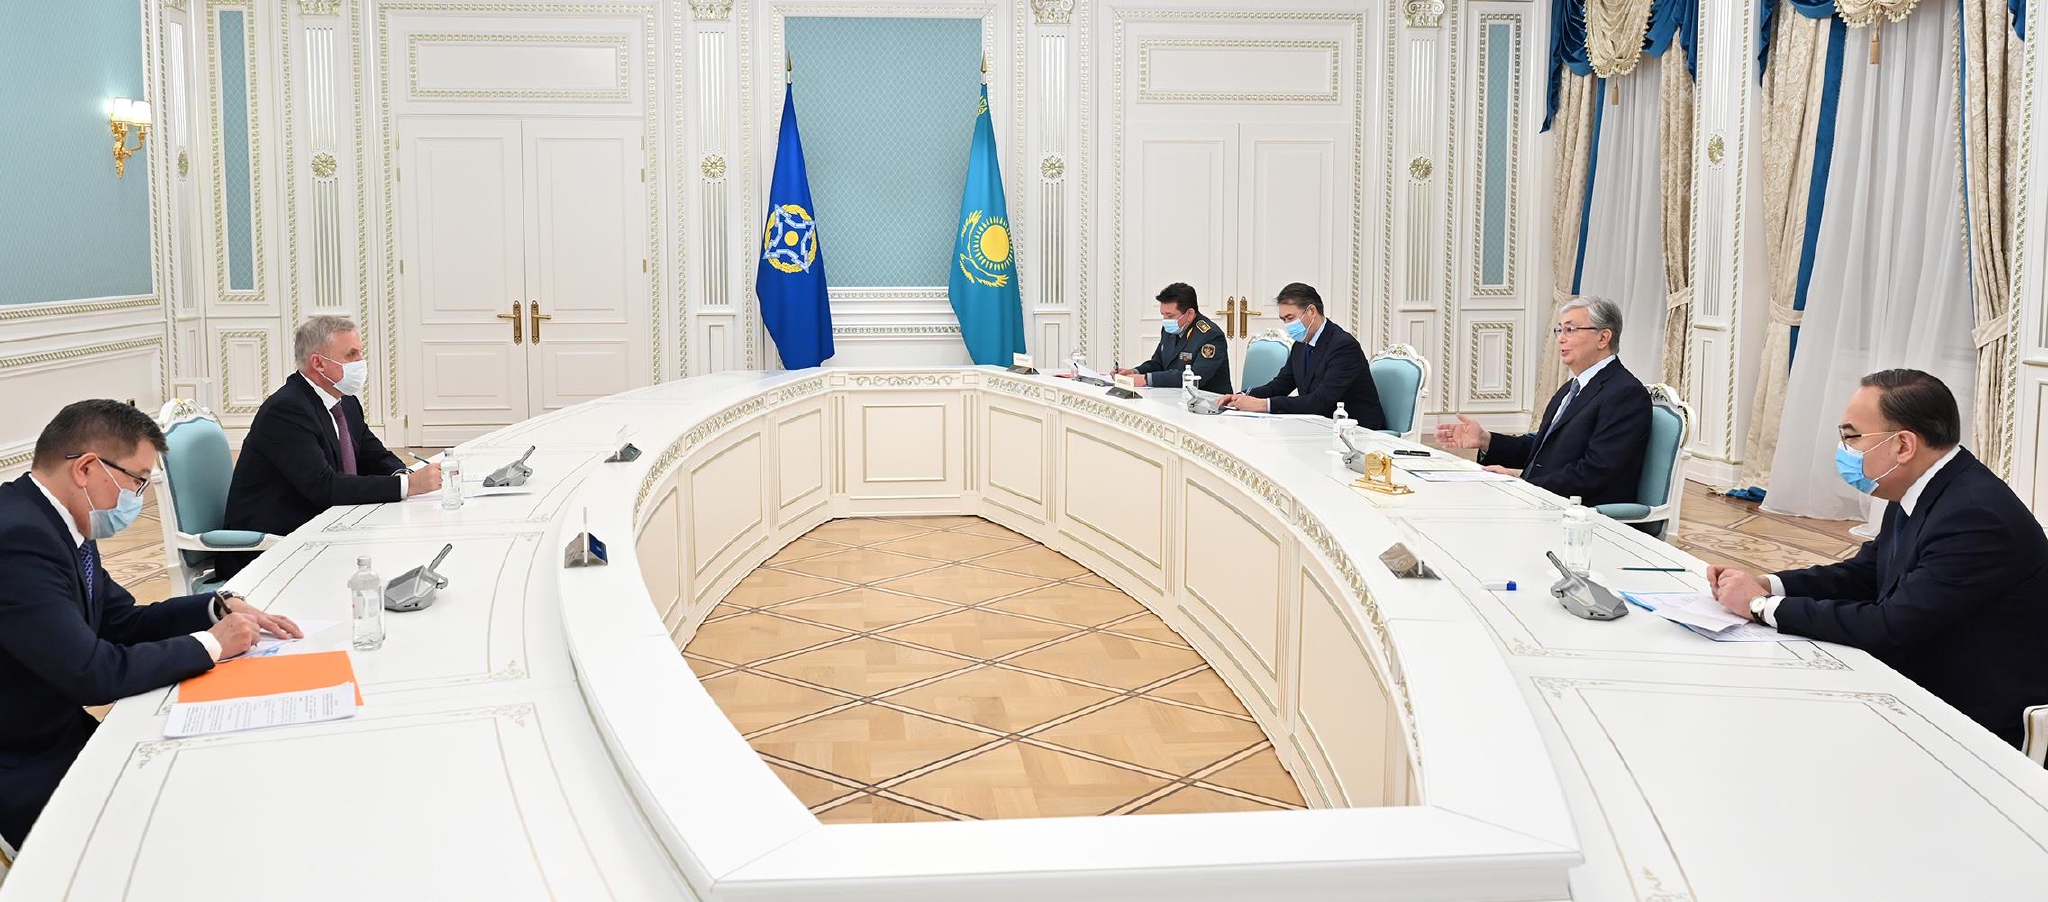 哈萨克斯坦总统托卡耶夫会见集安组织秘书长扎斯